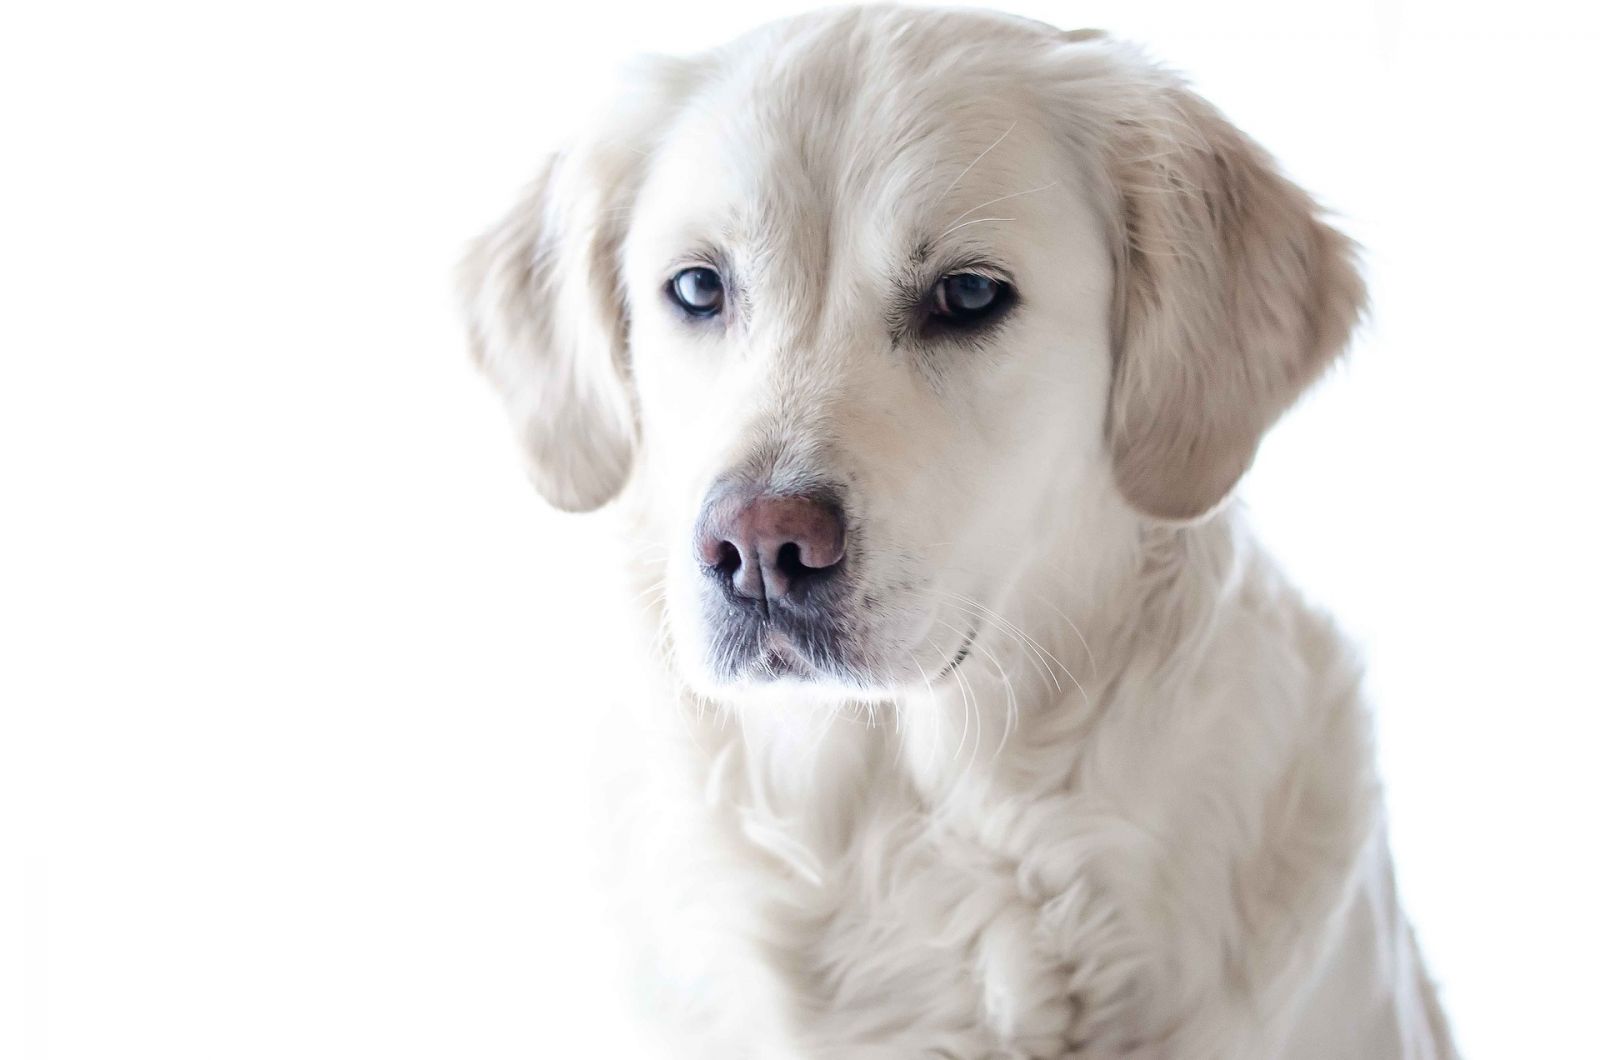 Angebot Hundekrankenversicherung anfordern